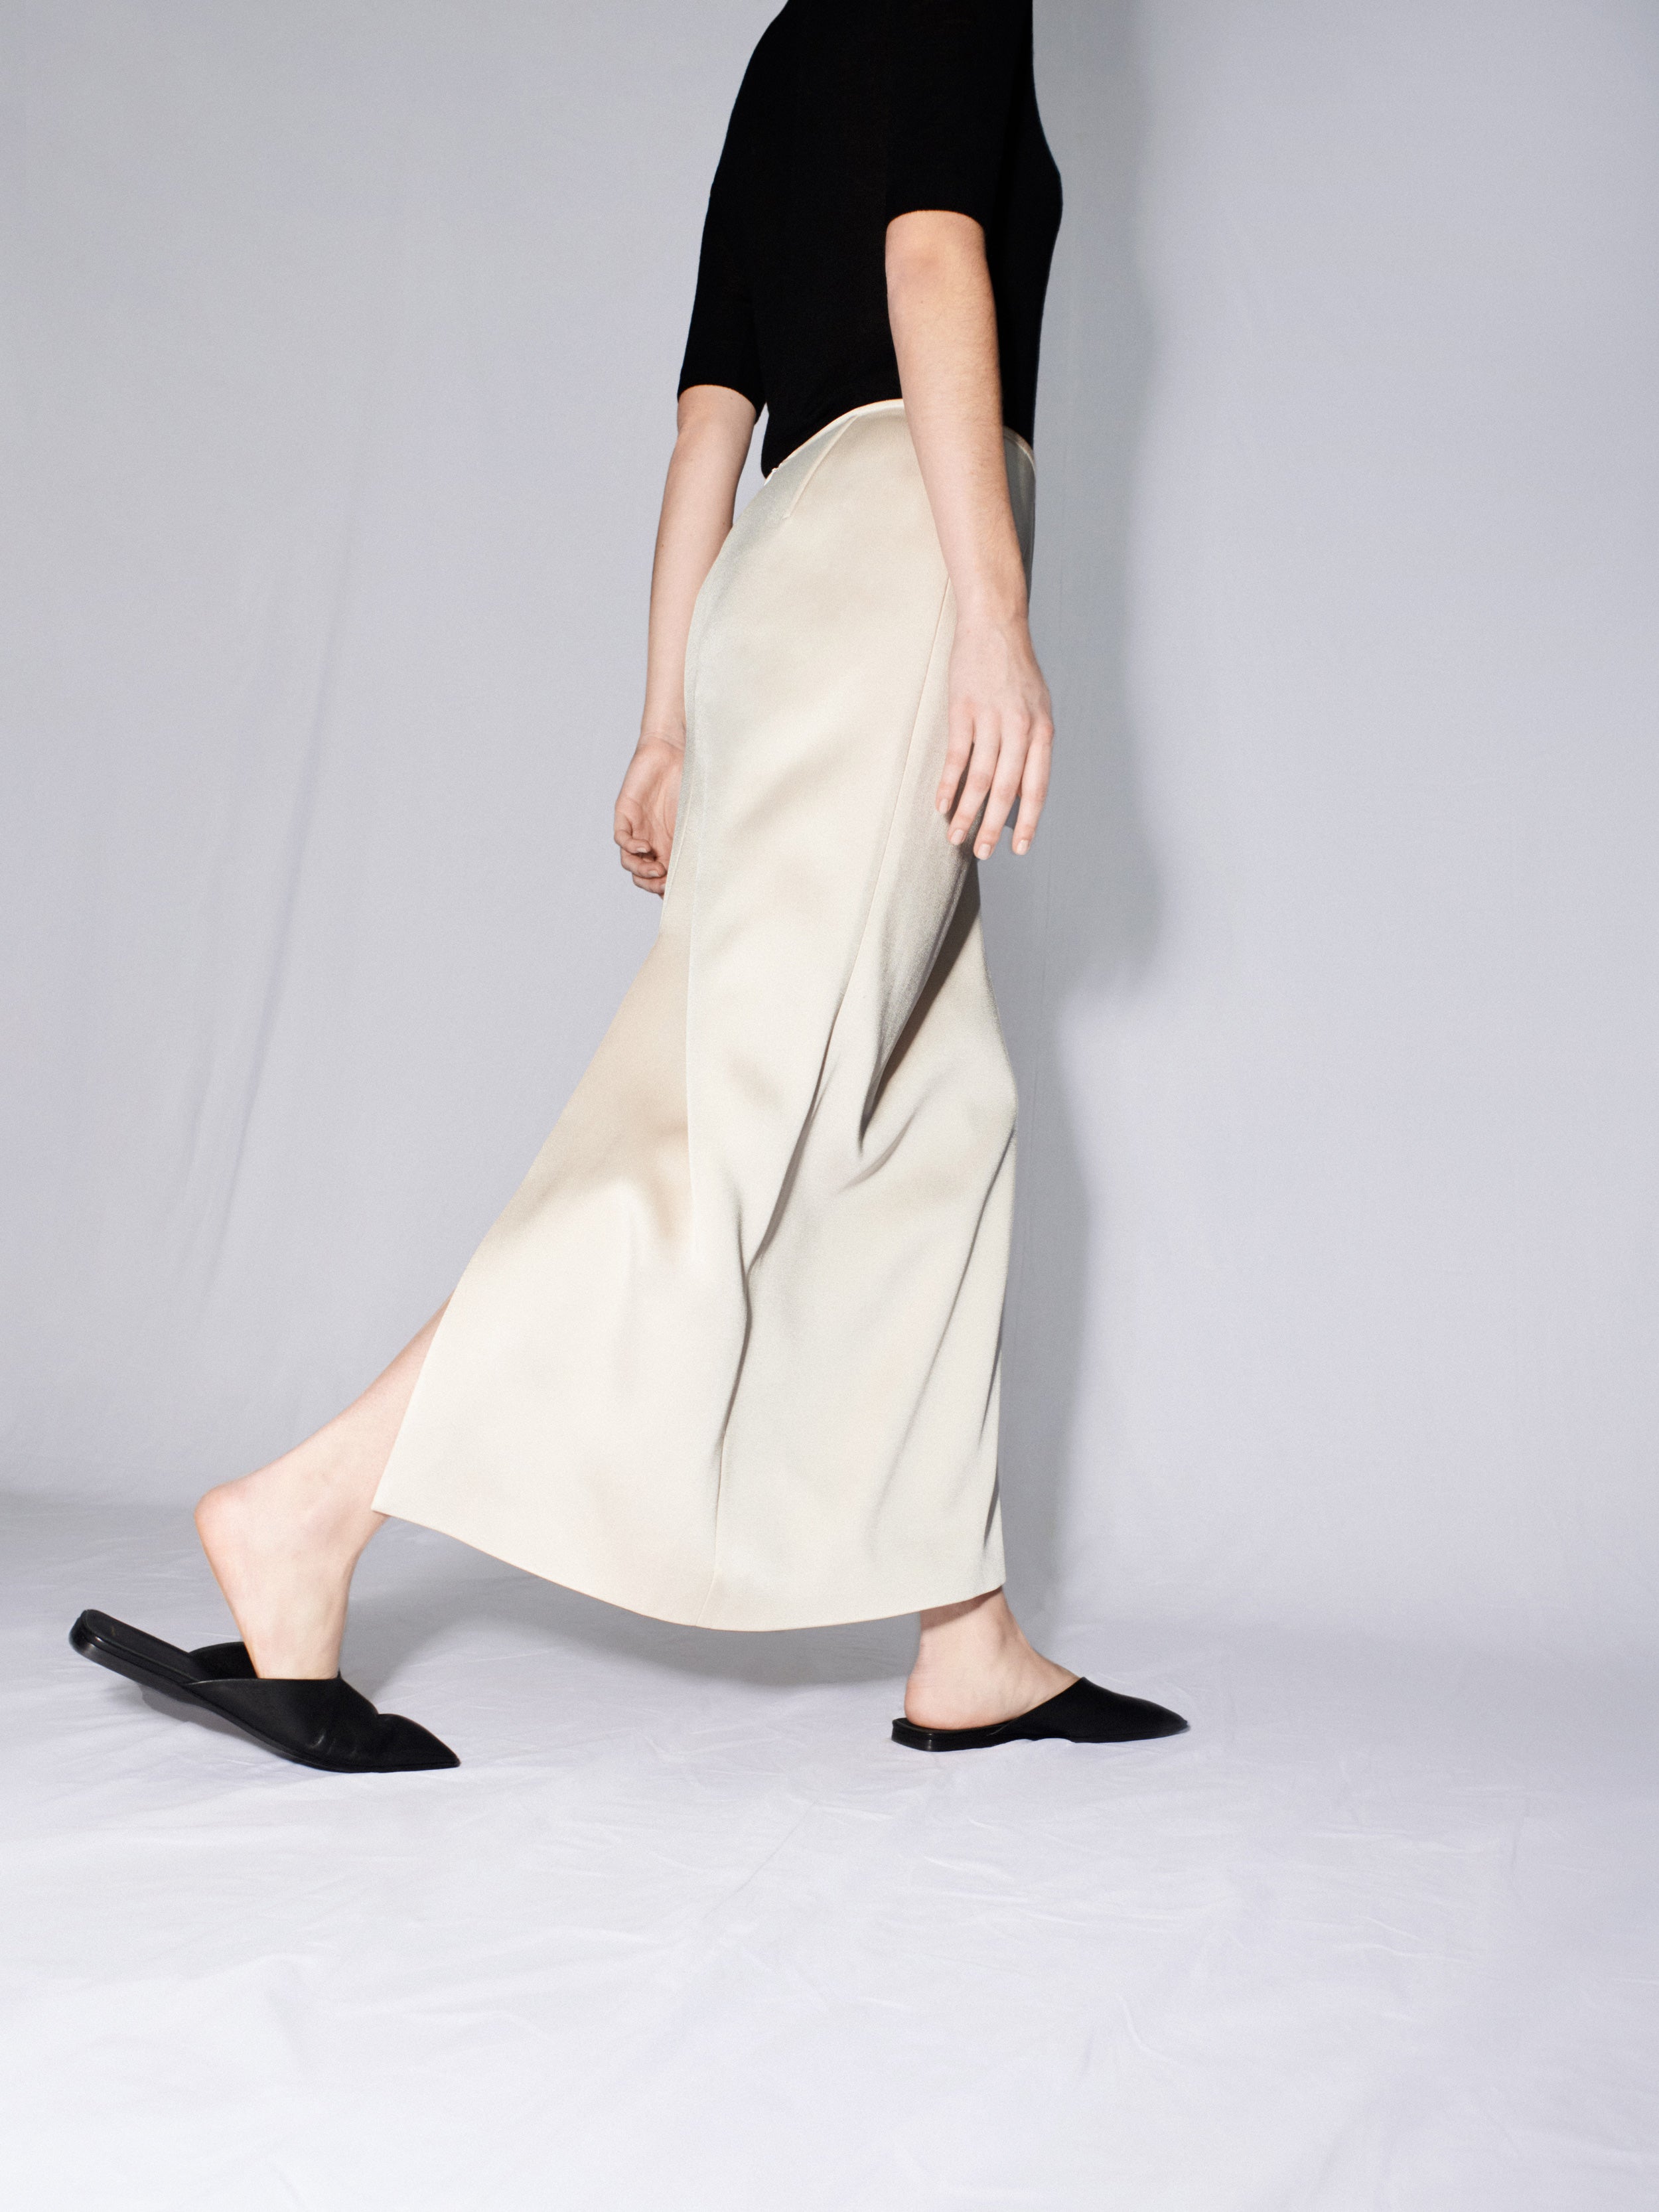 Carven Women's ready-to-wear | Long skirt in satin